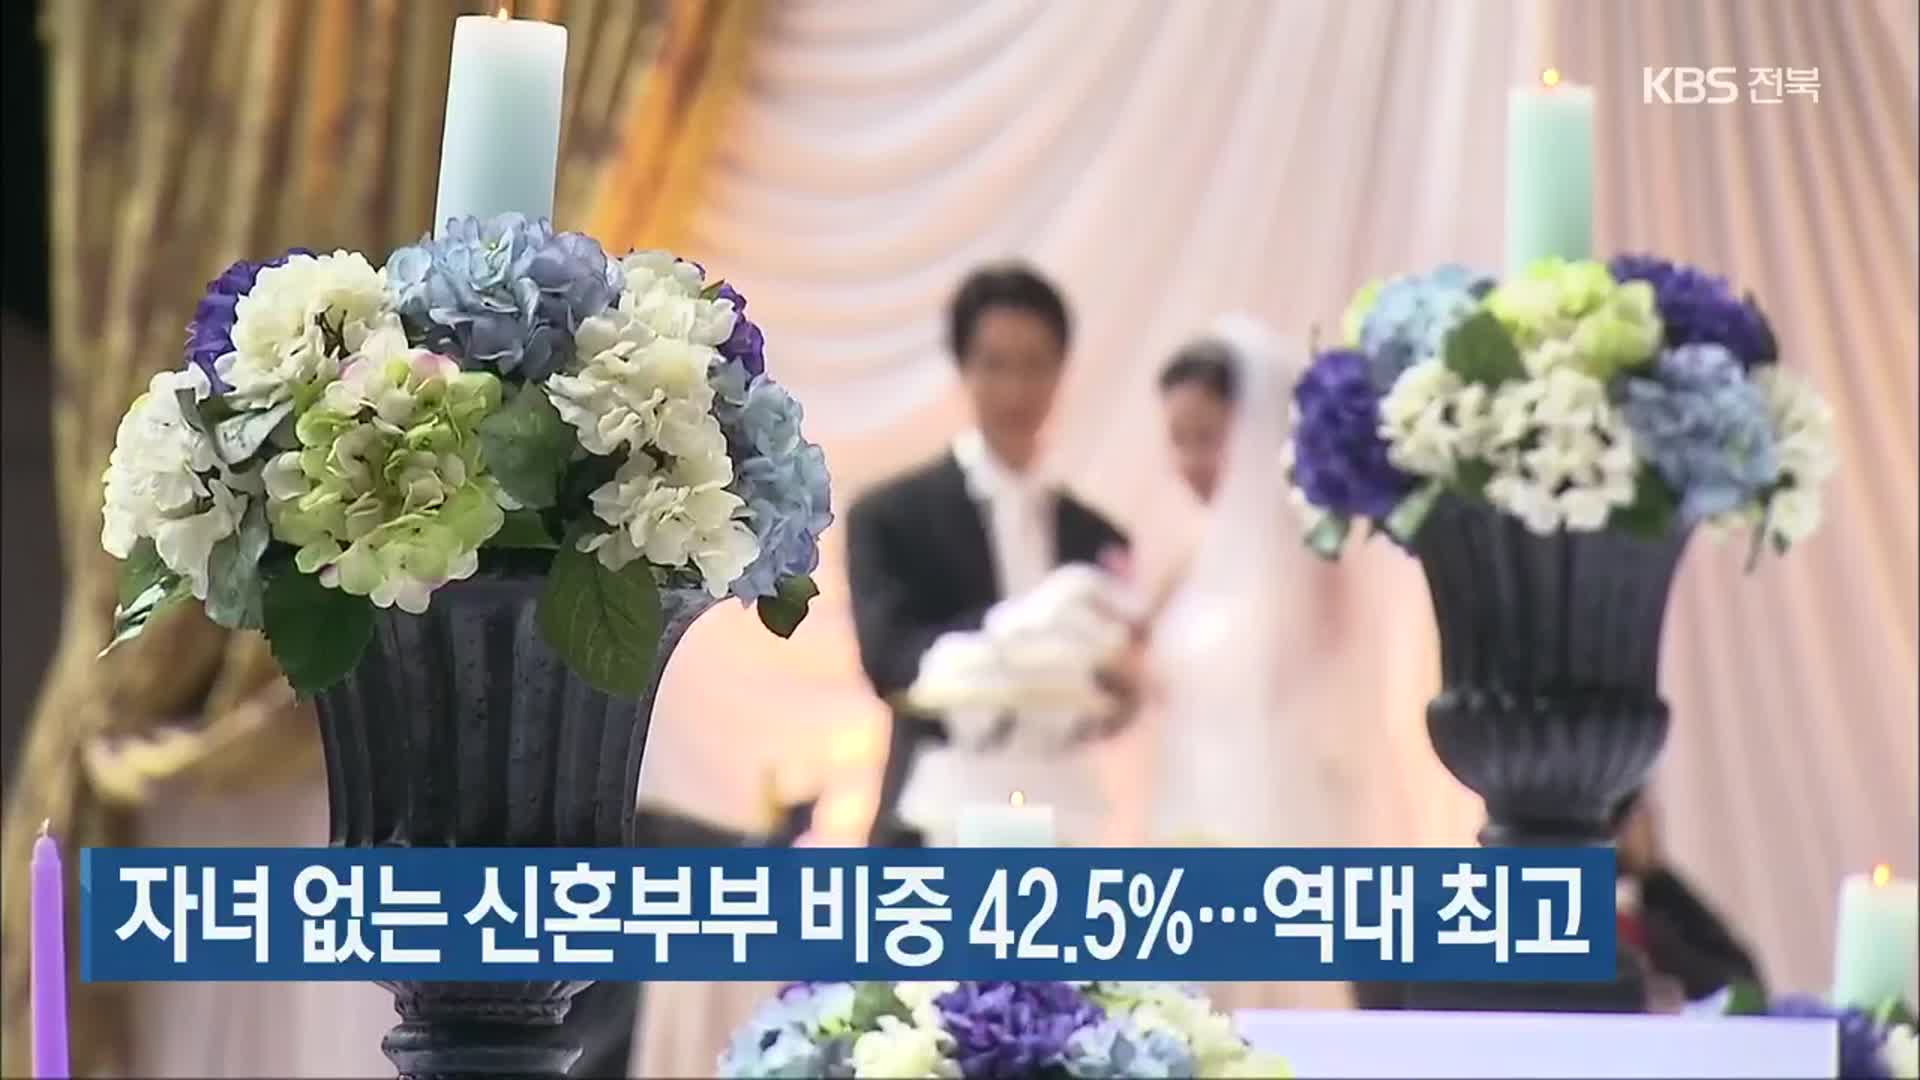 자녀 없는 신혼부부 비중 42.5%…역대 최고